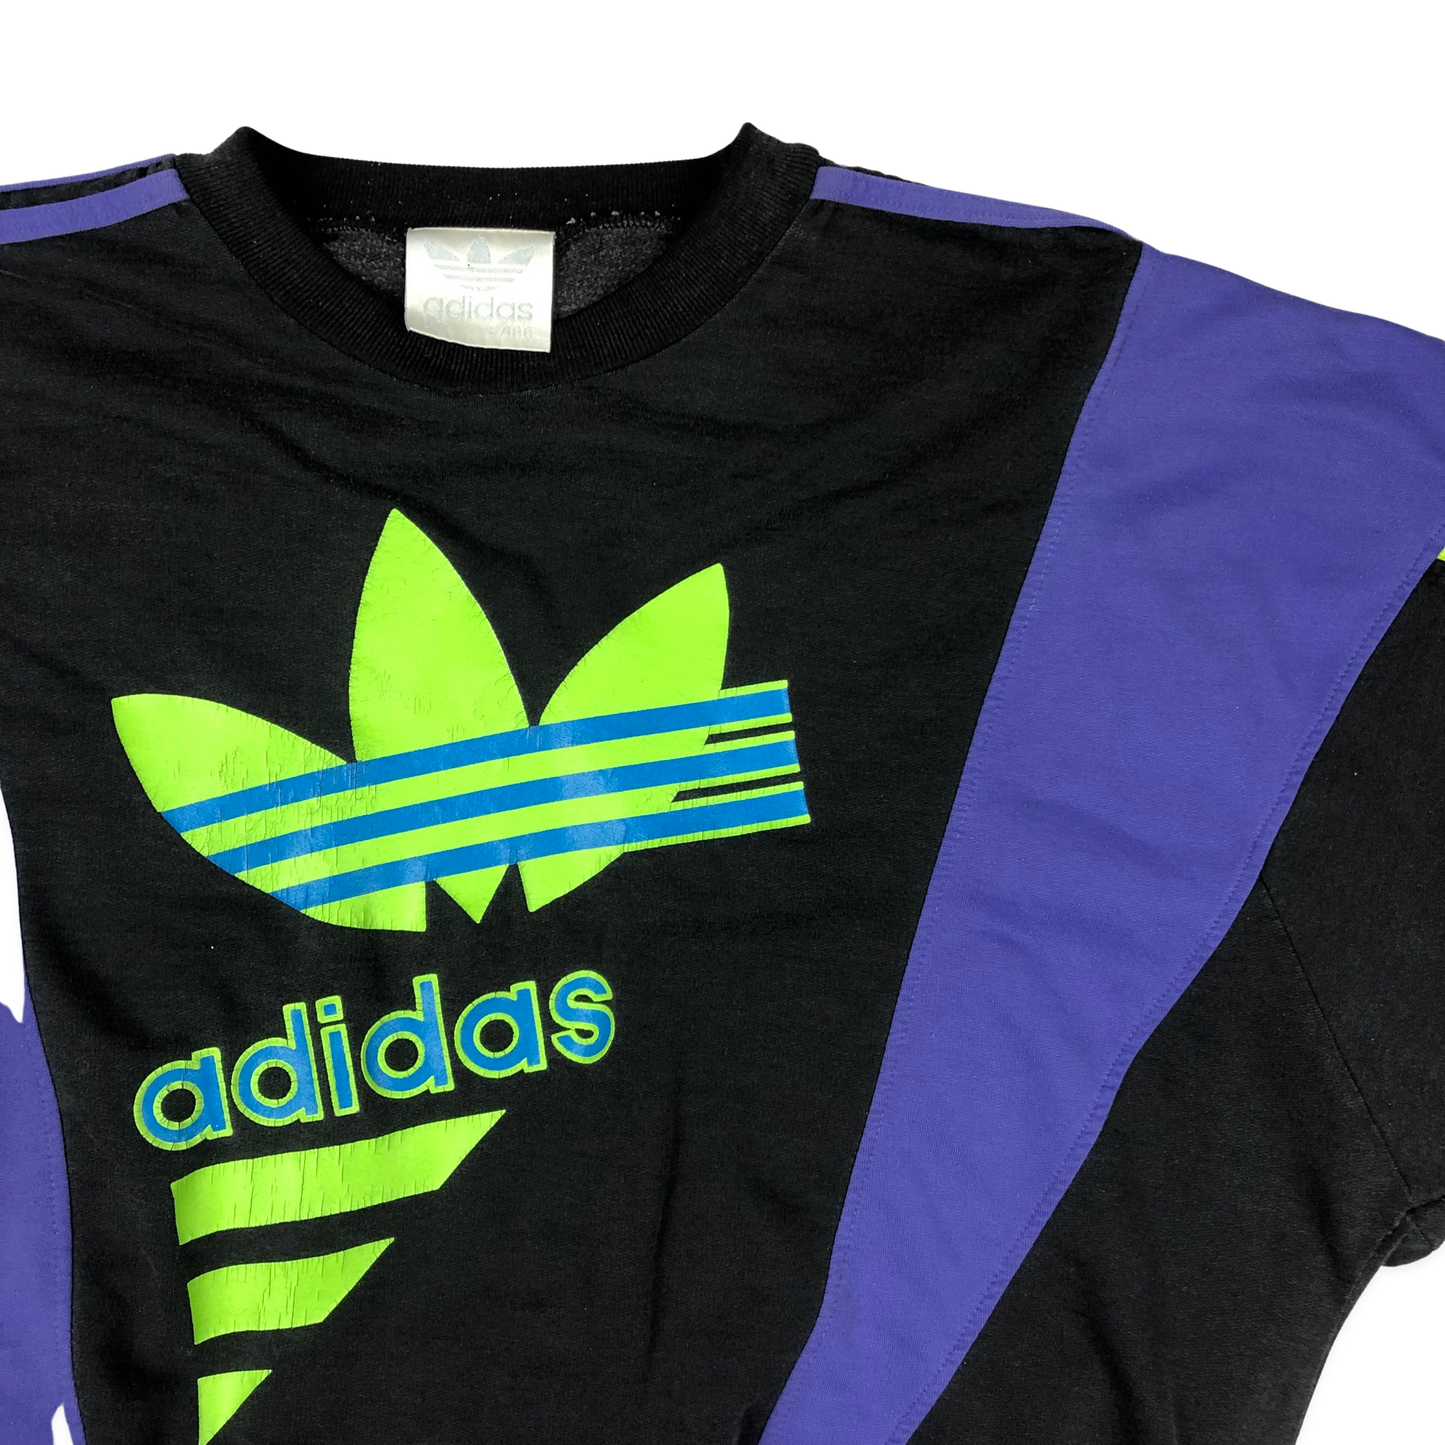 Vintage 90s Adidas Black and Purple Sweatshirt Large XL